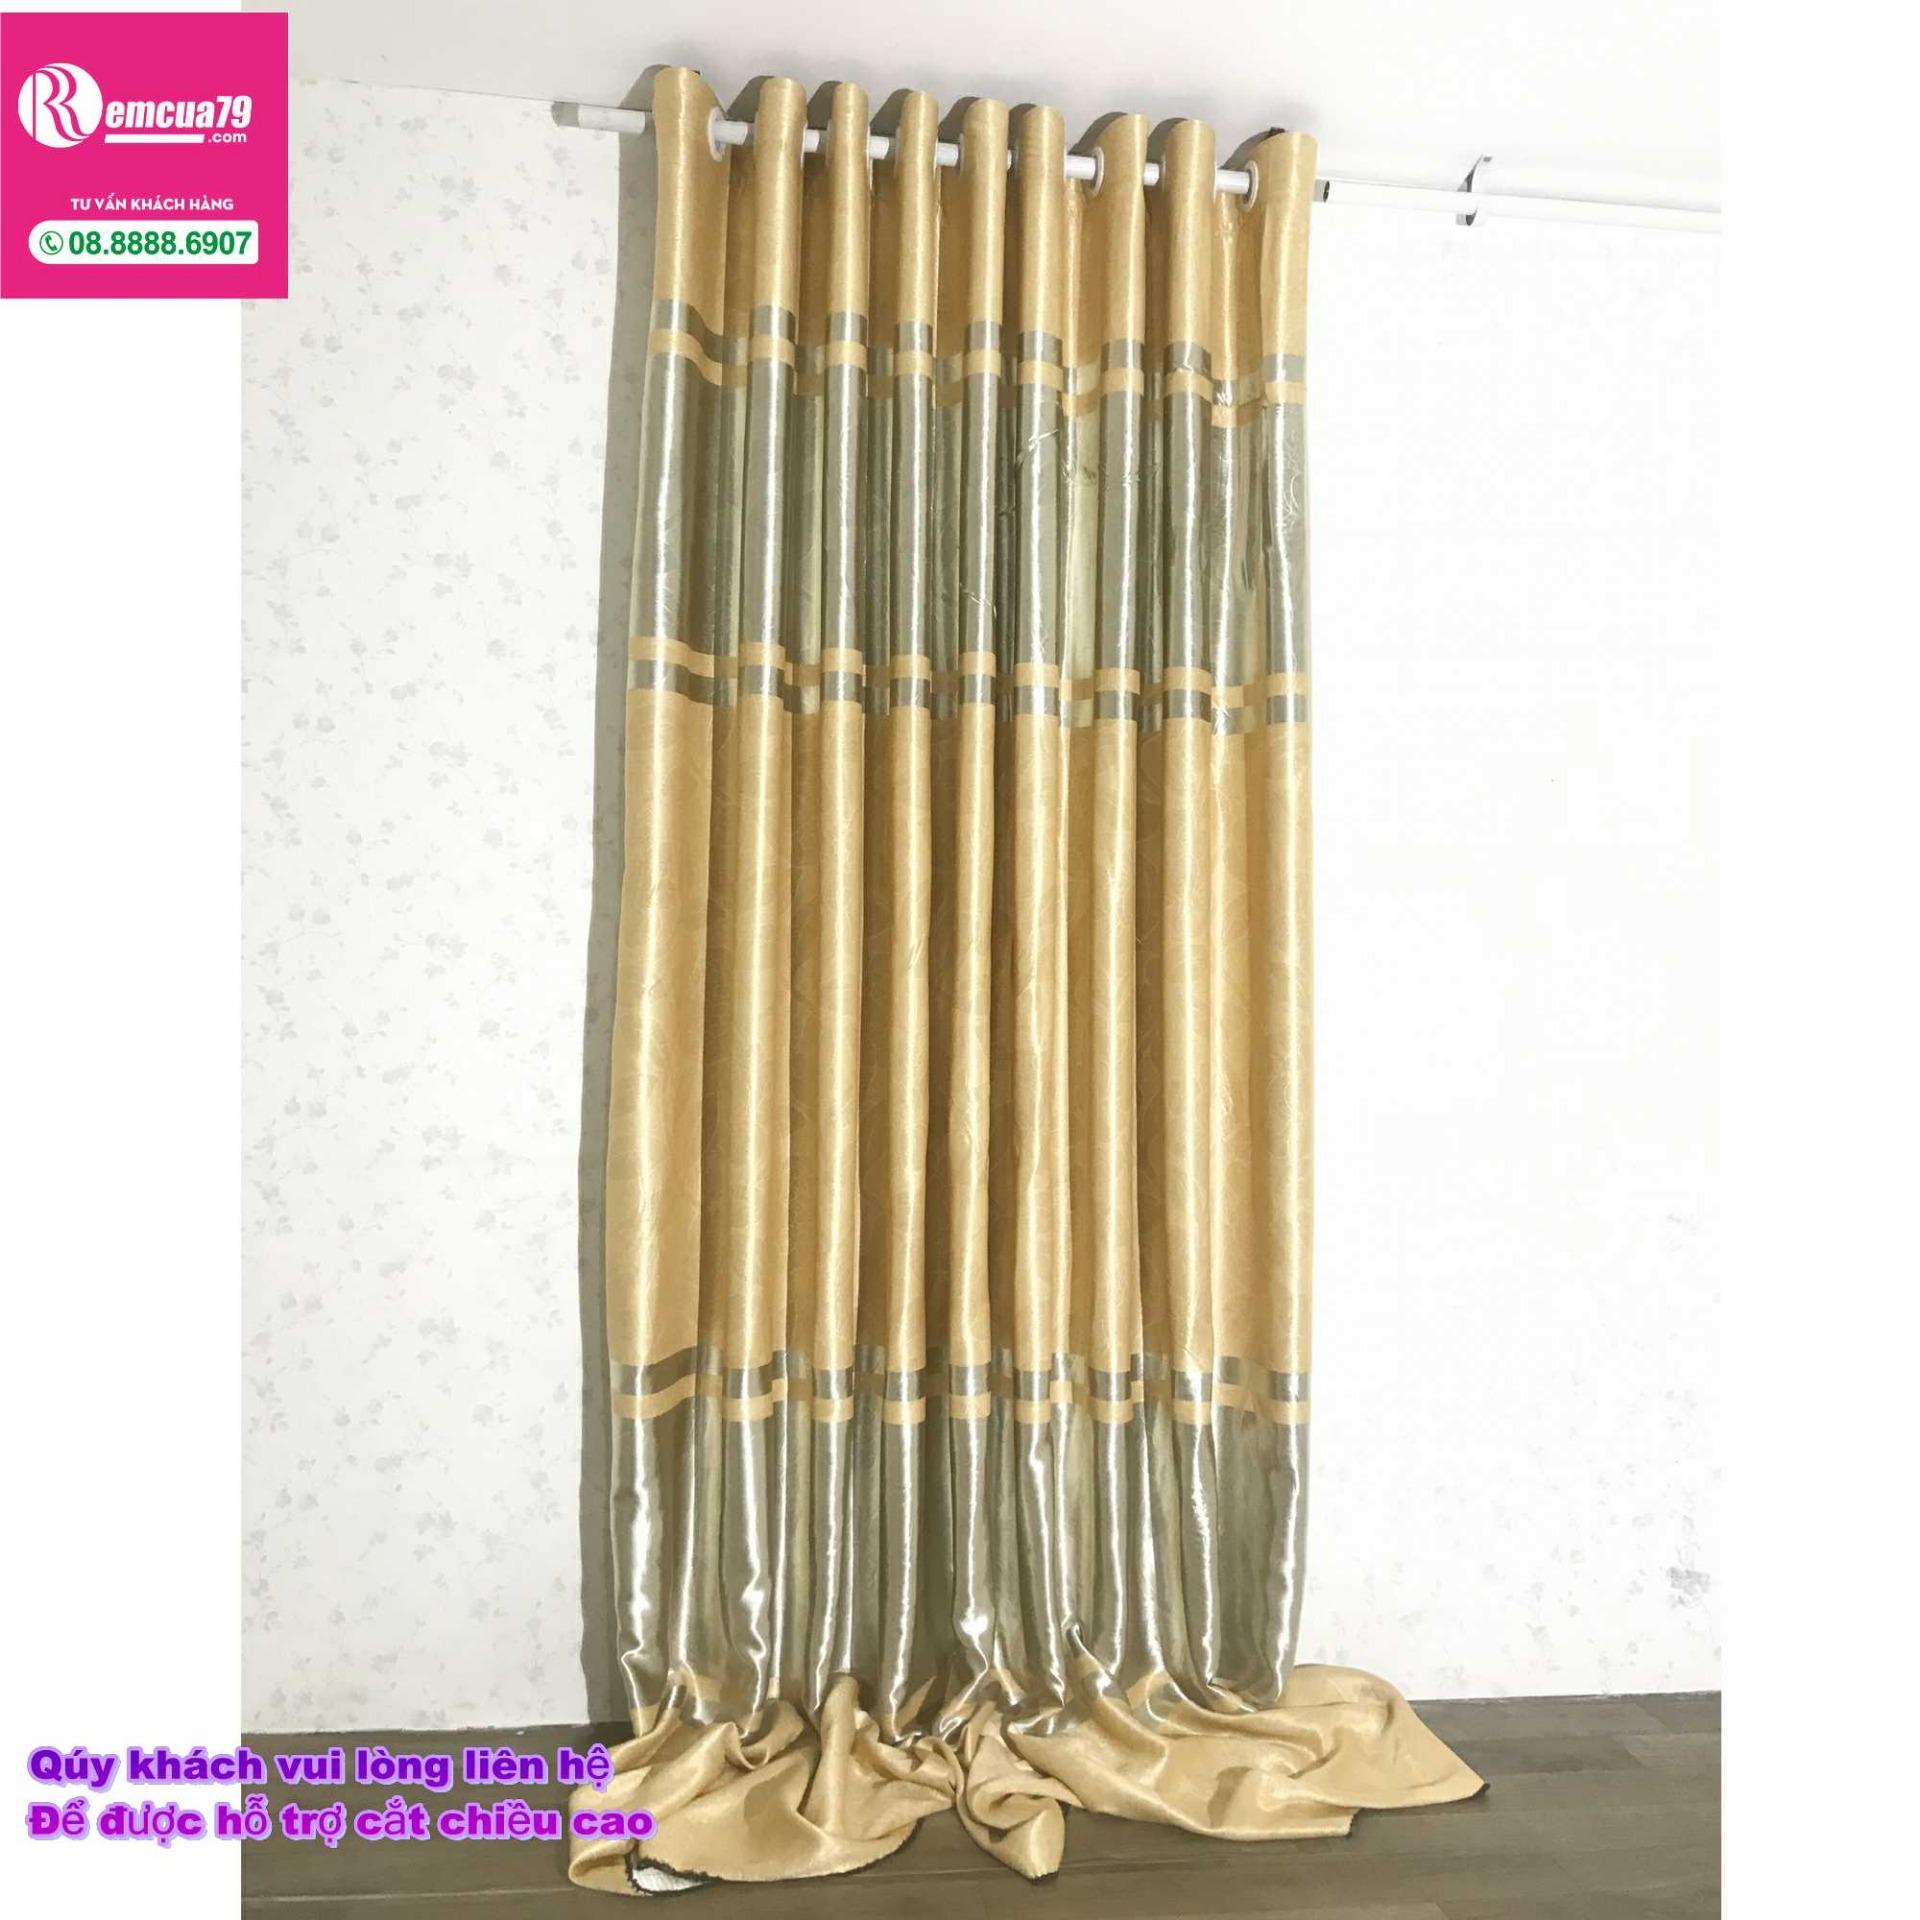 Rèm, màn cửa Ph curtains( ngang300cm x cao 270cm) Màu Vàng xám nhẹ hoa văn chìm + tặng dây vén màn